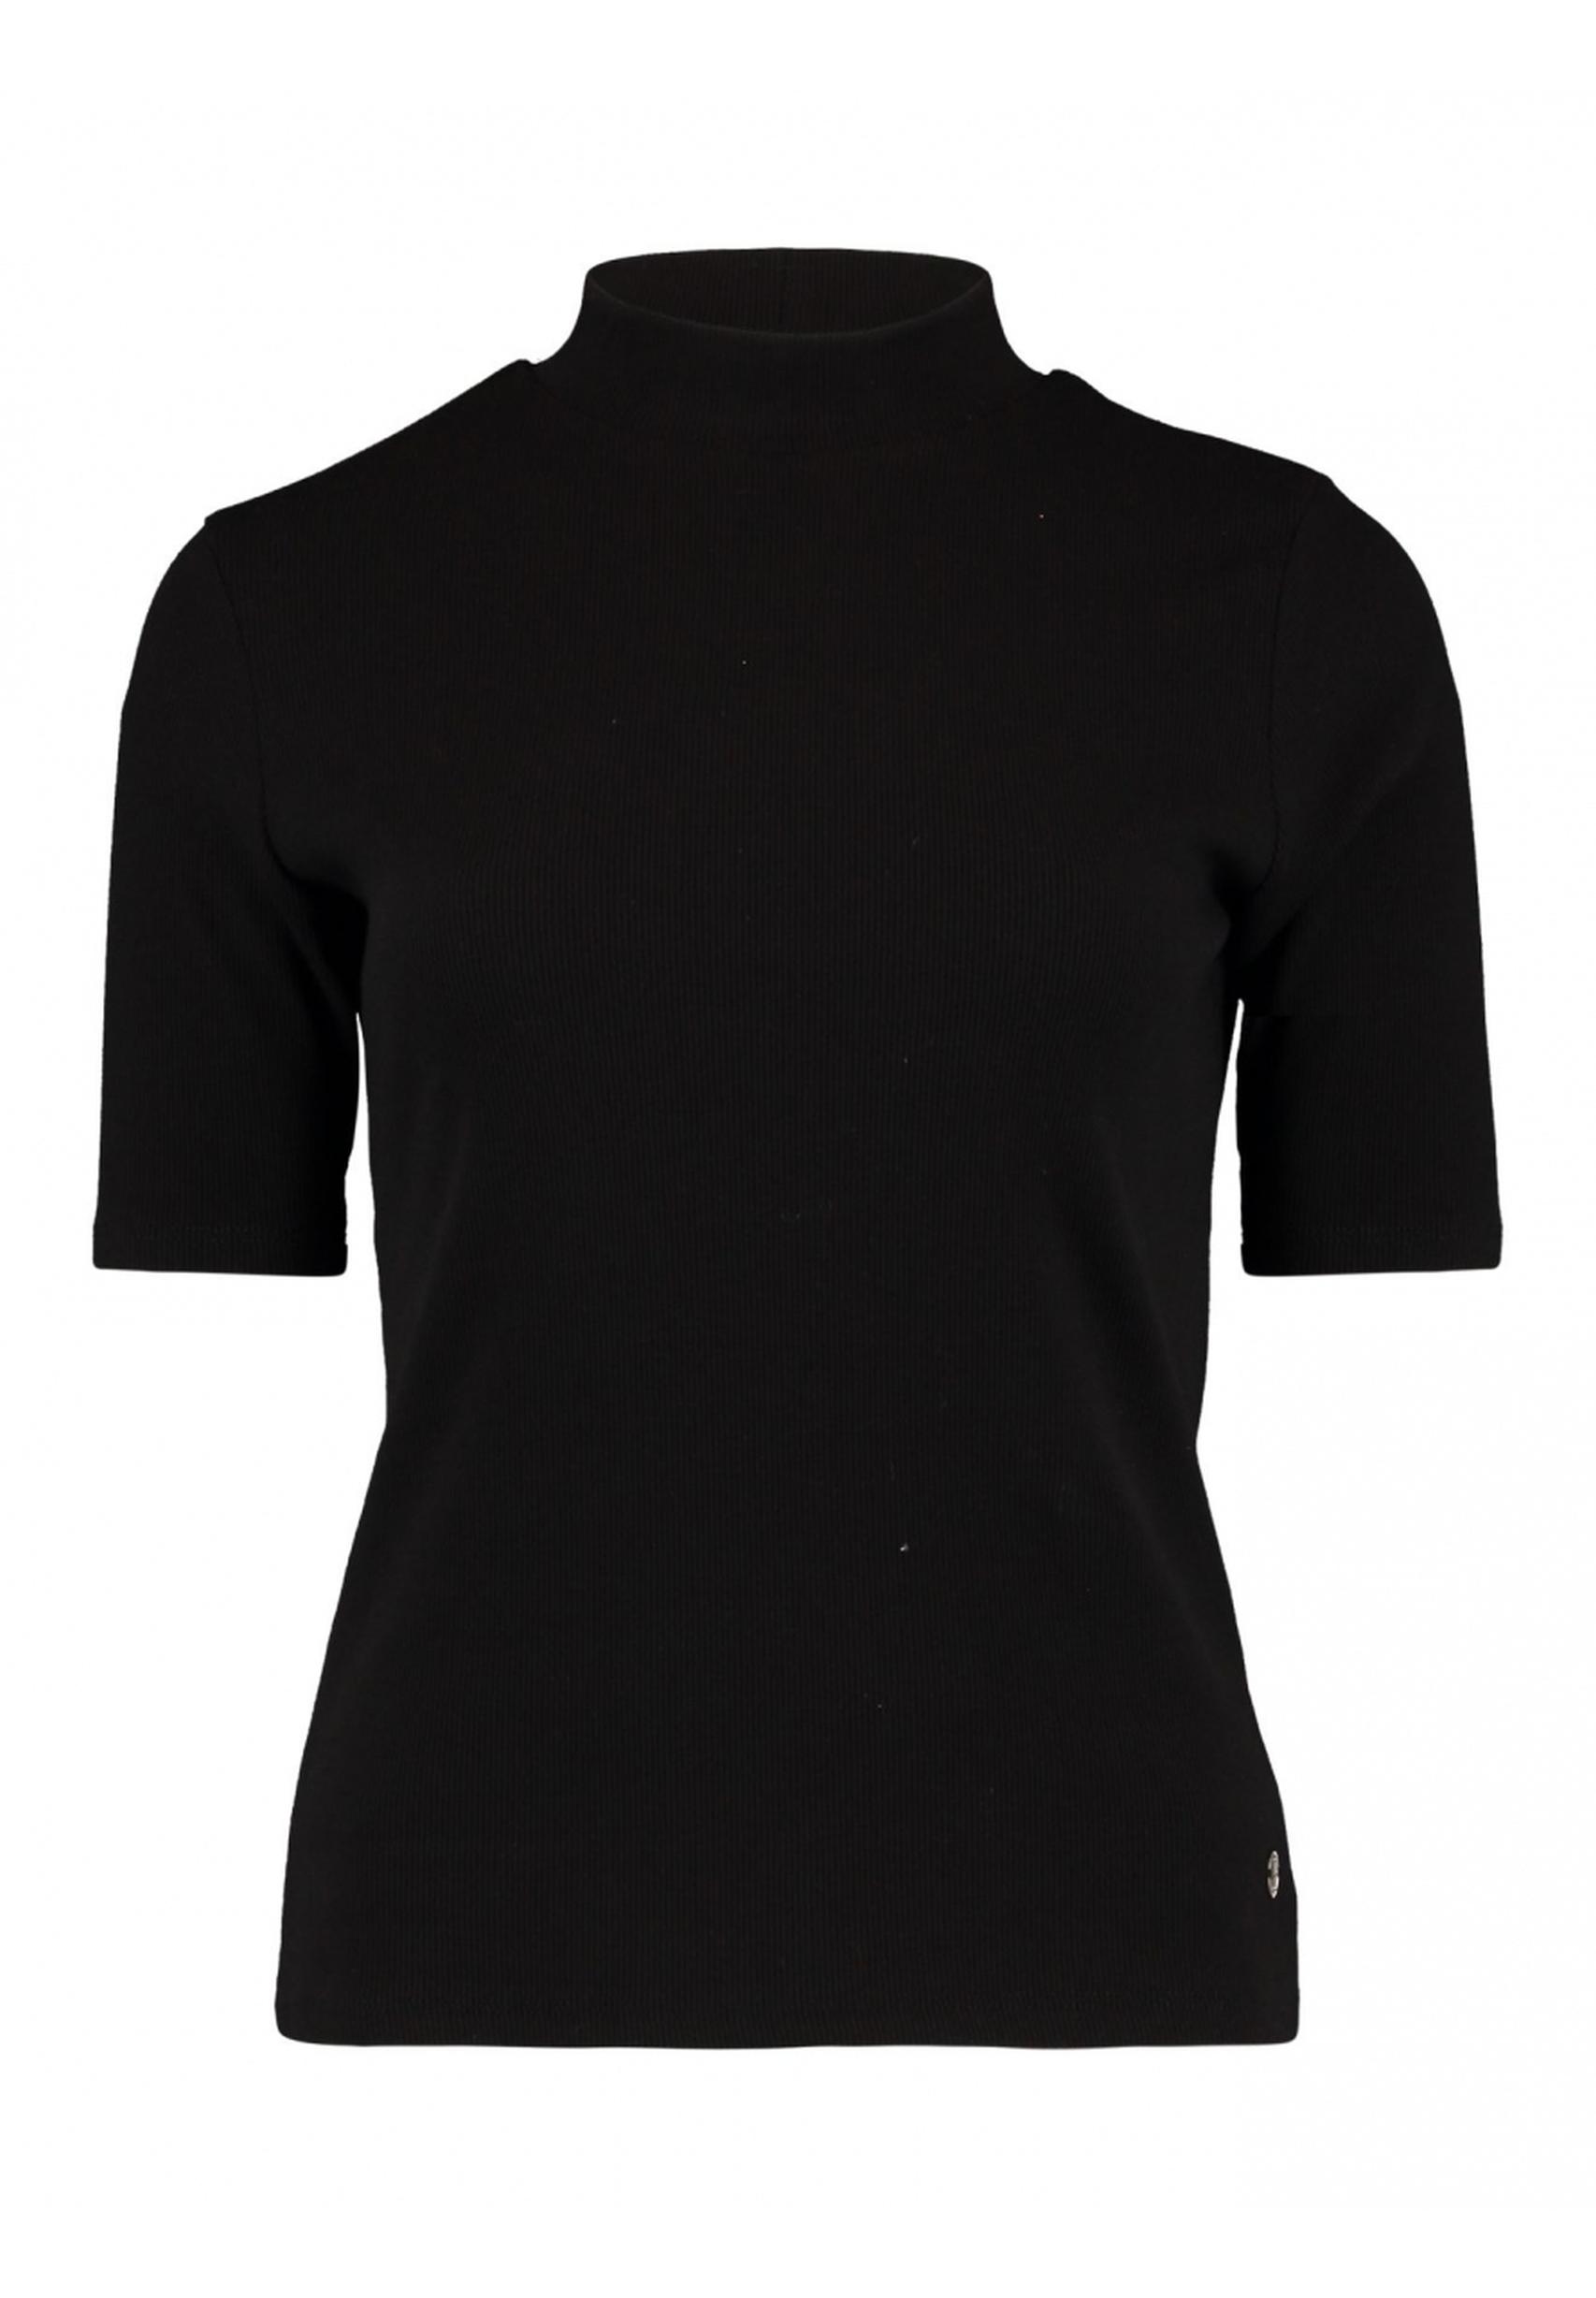 Zeitloses Shirt Ve44ra aus der Kollektion von Zabaione in schwarz -  WI-C-201-0301